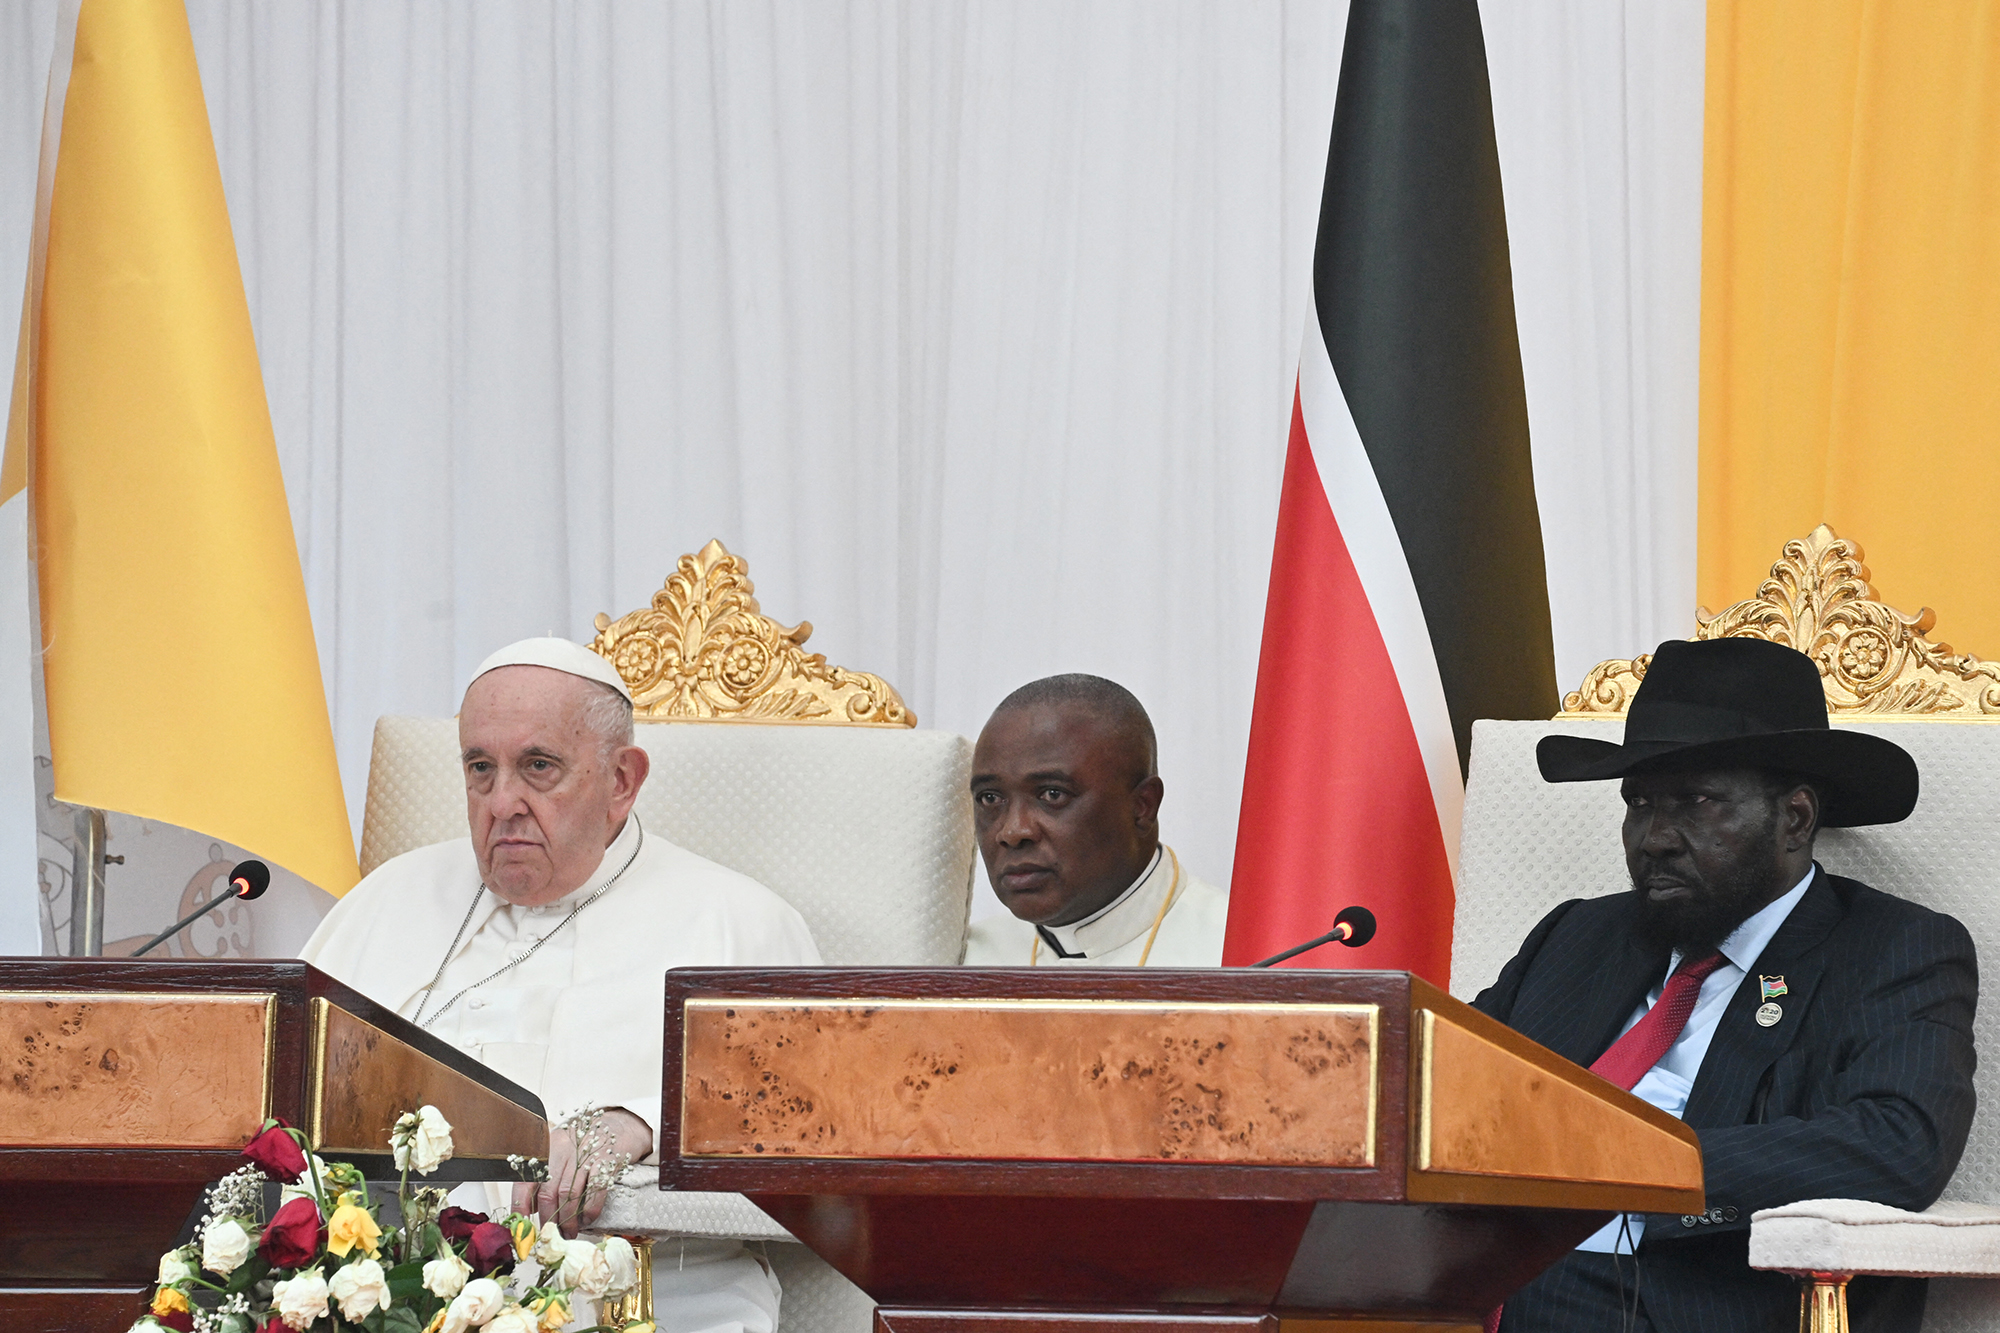 Papst Franziskus und der südsudanesische Präsident Salva Kiir (re.) bei ihrem Treffen im Garten des Präsidentenpalastes in Juba im Südsudan (Bild: Tiziana Fabi/AFP)